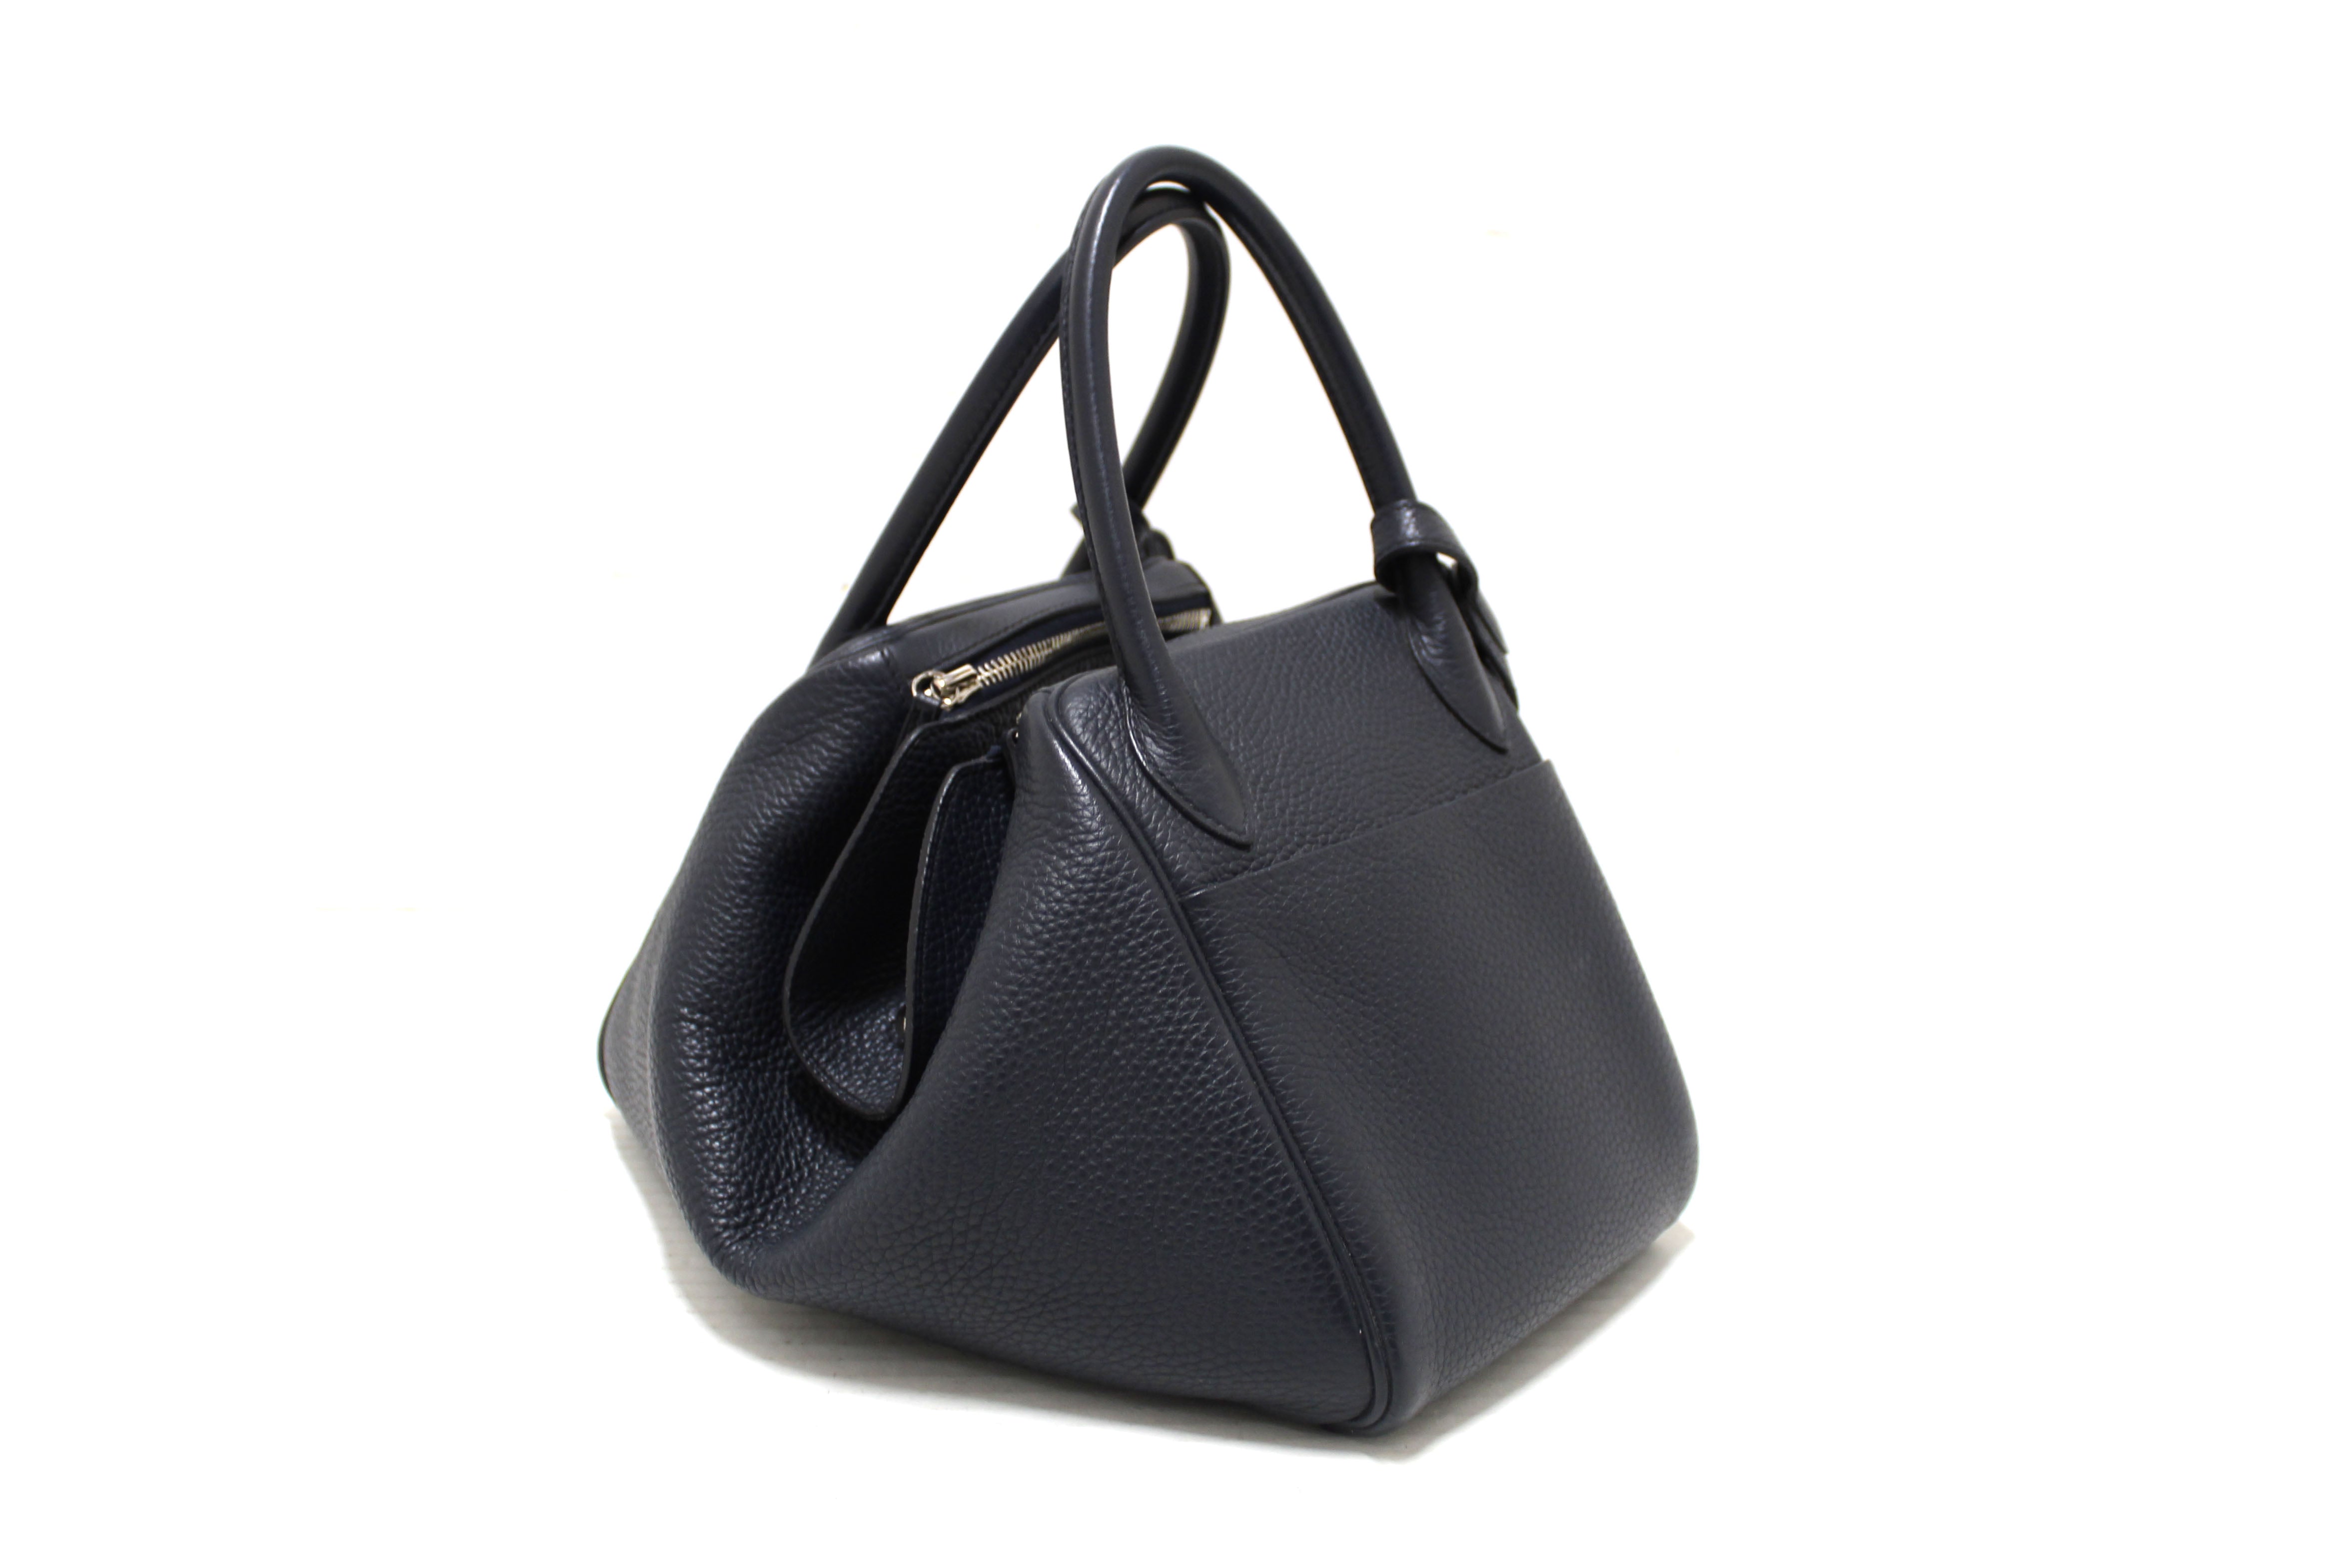 Authentic Hermes Bleu Indigo Togo Leather Lindy 30 Handbag/Shoulder Bag